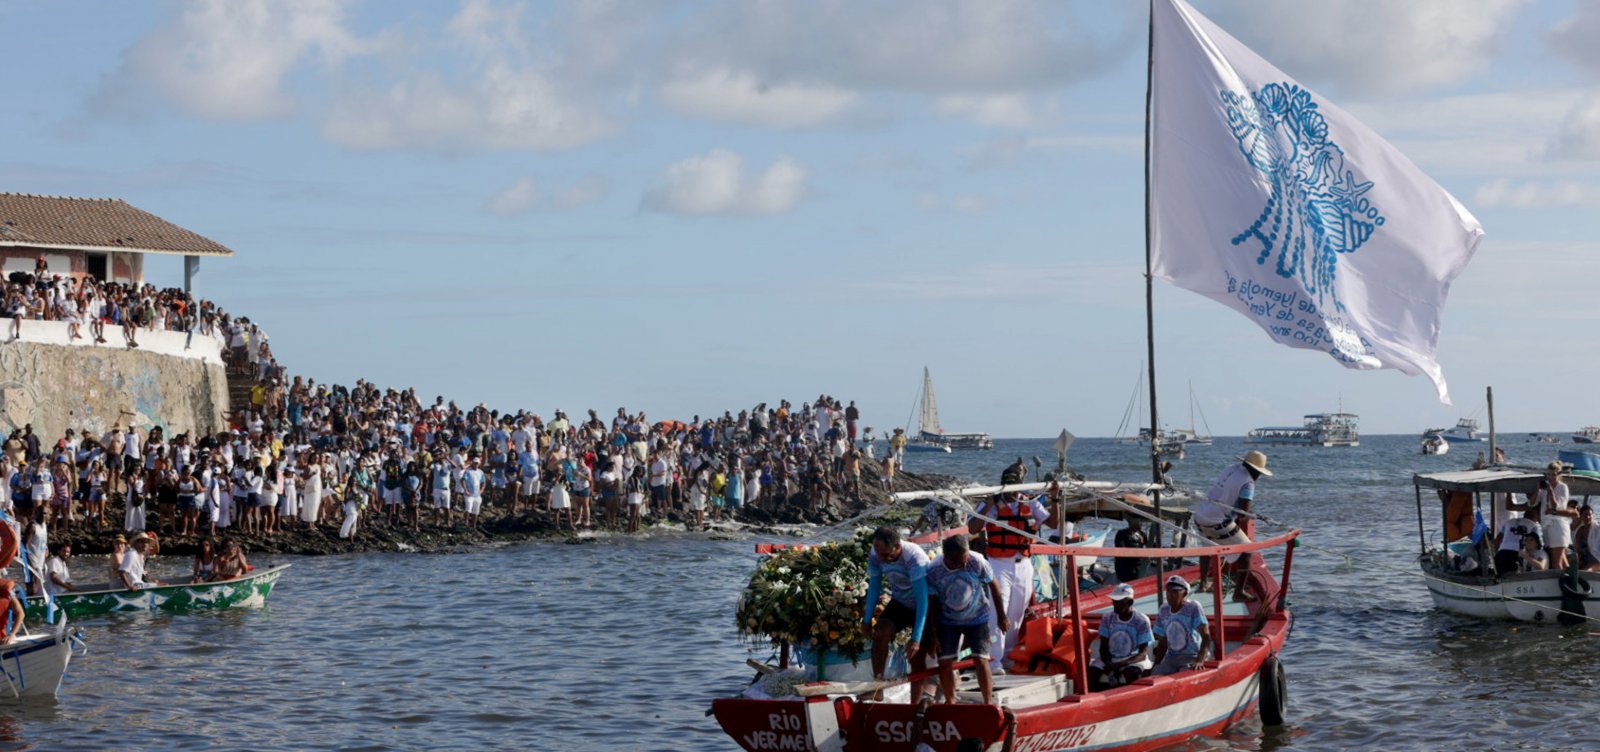 Odoyá, Rainha das Águas: festa com mais de 100 anos, 2 de Fevereiro se populariza e mantém tradições